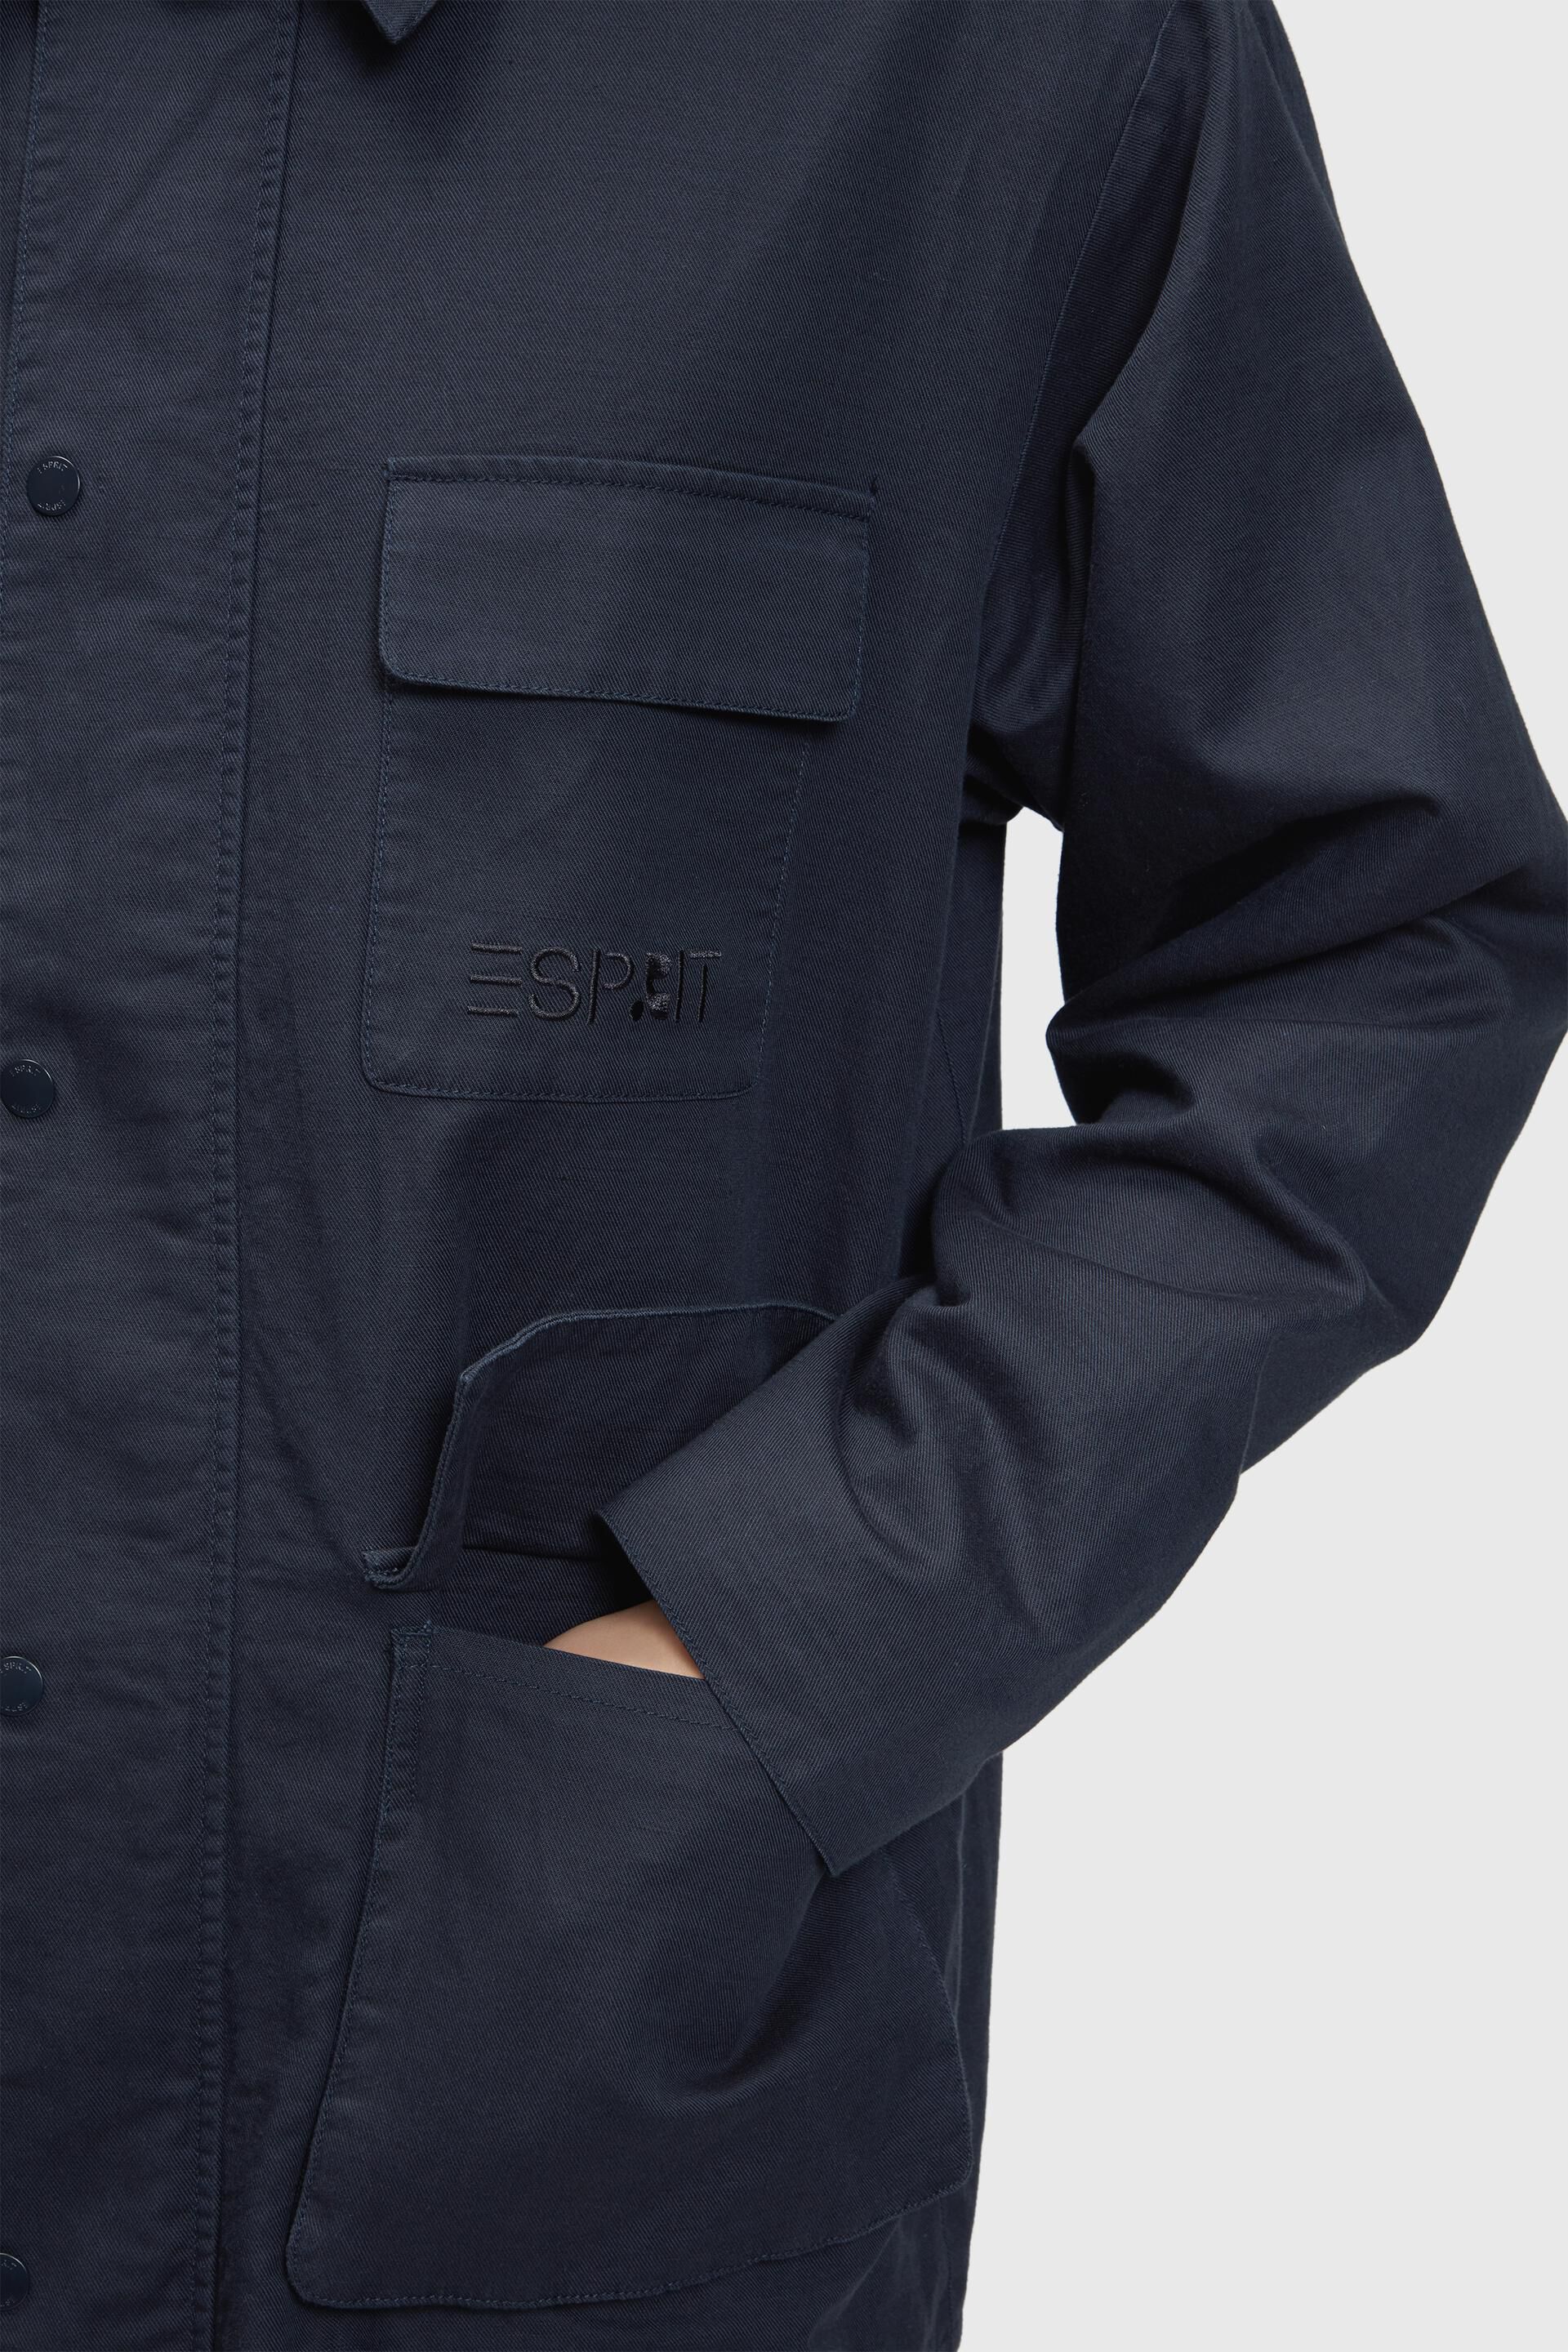 Esprit Linen with zipper blend shacket